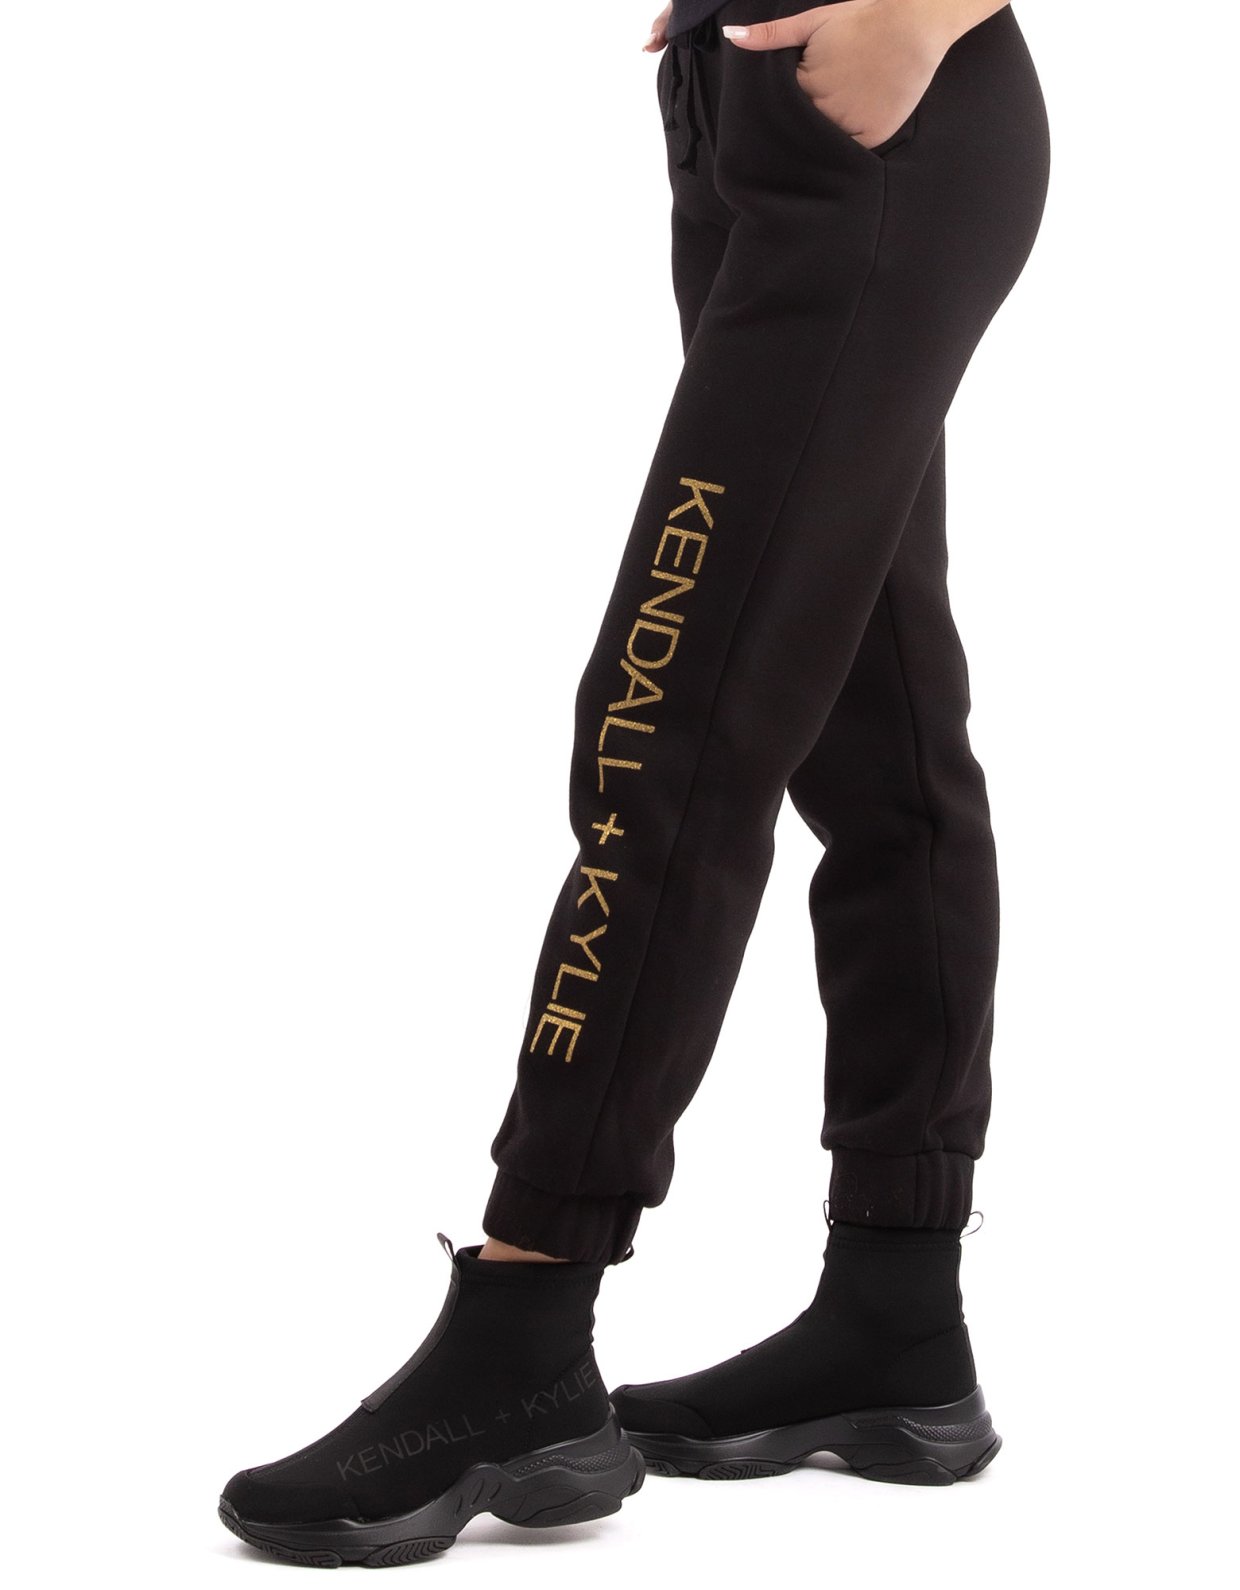 Kendall + Kylie Vertical logo sweatpants black